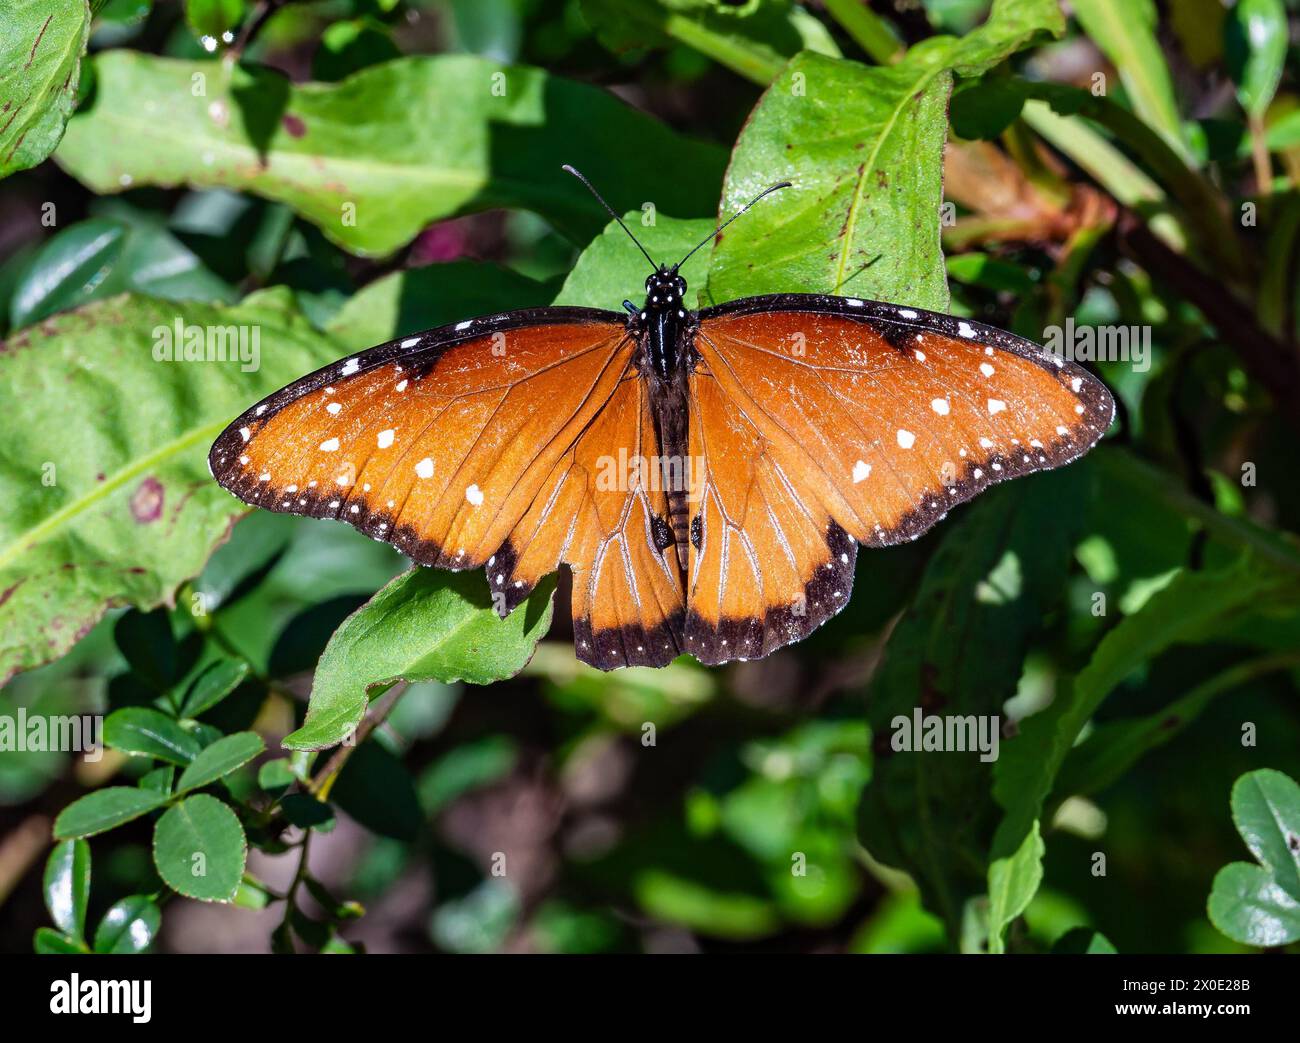 Un papillon reine coloré (Danaus gilippus) perché sur des feuilles vertes. Texas, États-Unis. Banque D'Images